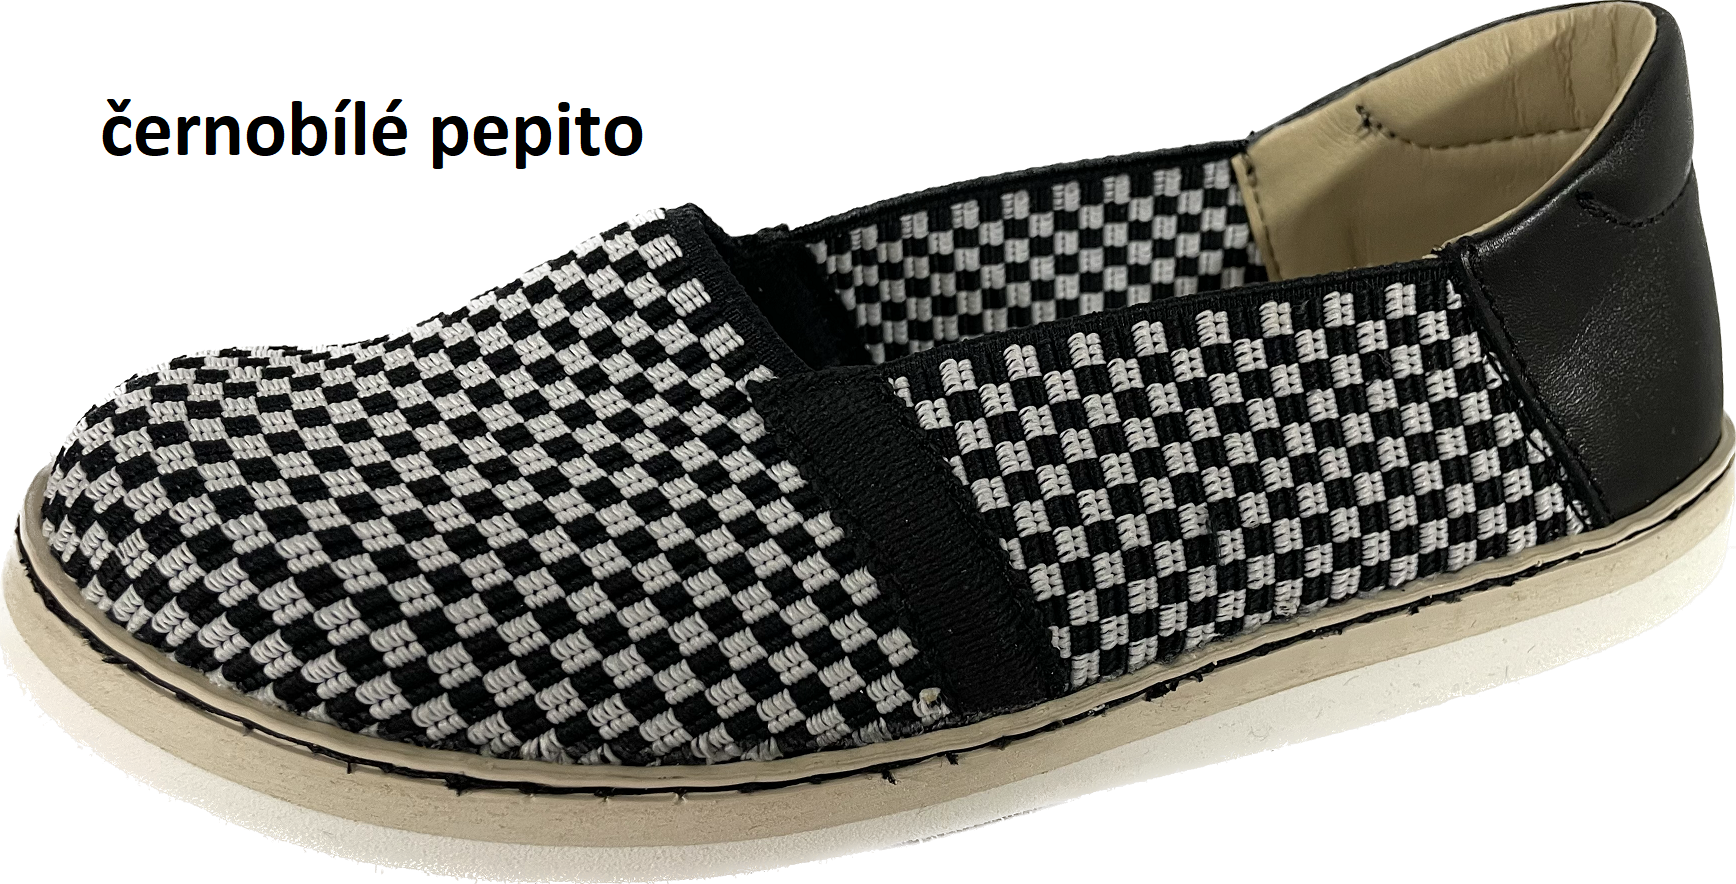 Boty Hanák dětská domácí obuv Pepa Velikost obuvi: 27, Useň: hnědobílé pepito